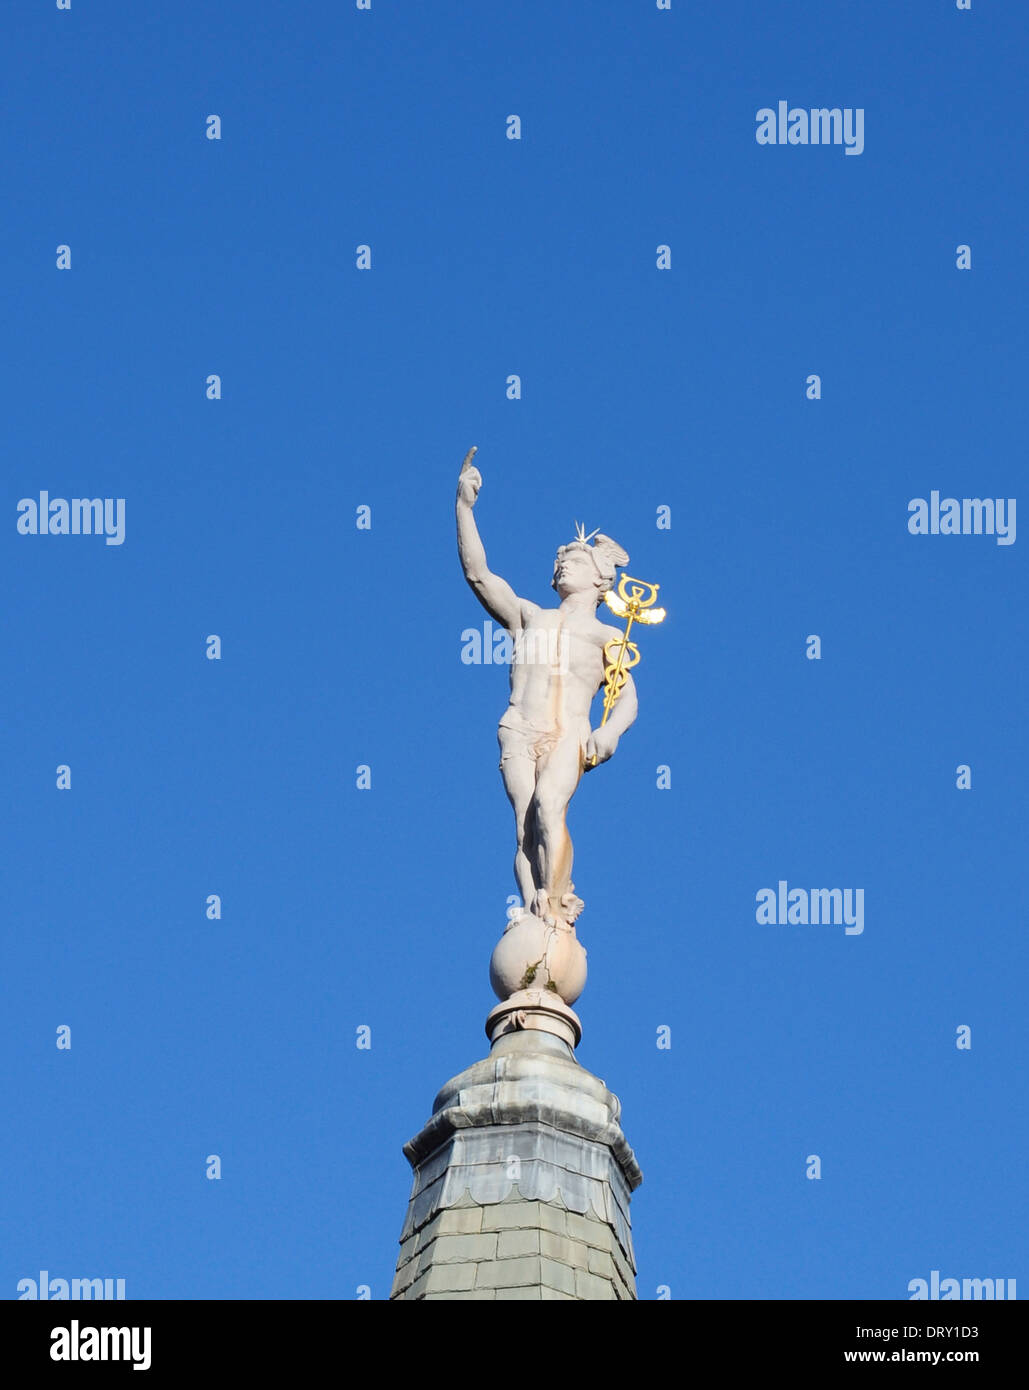 Estatua del dios romano mercurio, por Arthur Stanley Young, en el techo de la casa dispuestos, Gray's Inn Road, Londres, Inglaterra, Reino Unido. Foto de stock